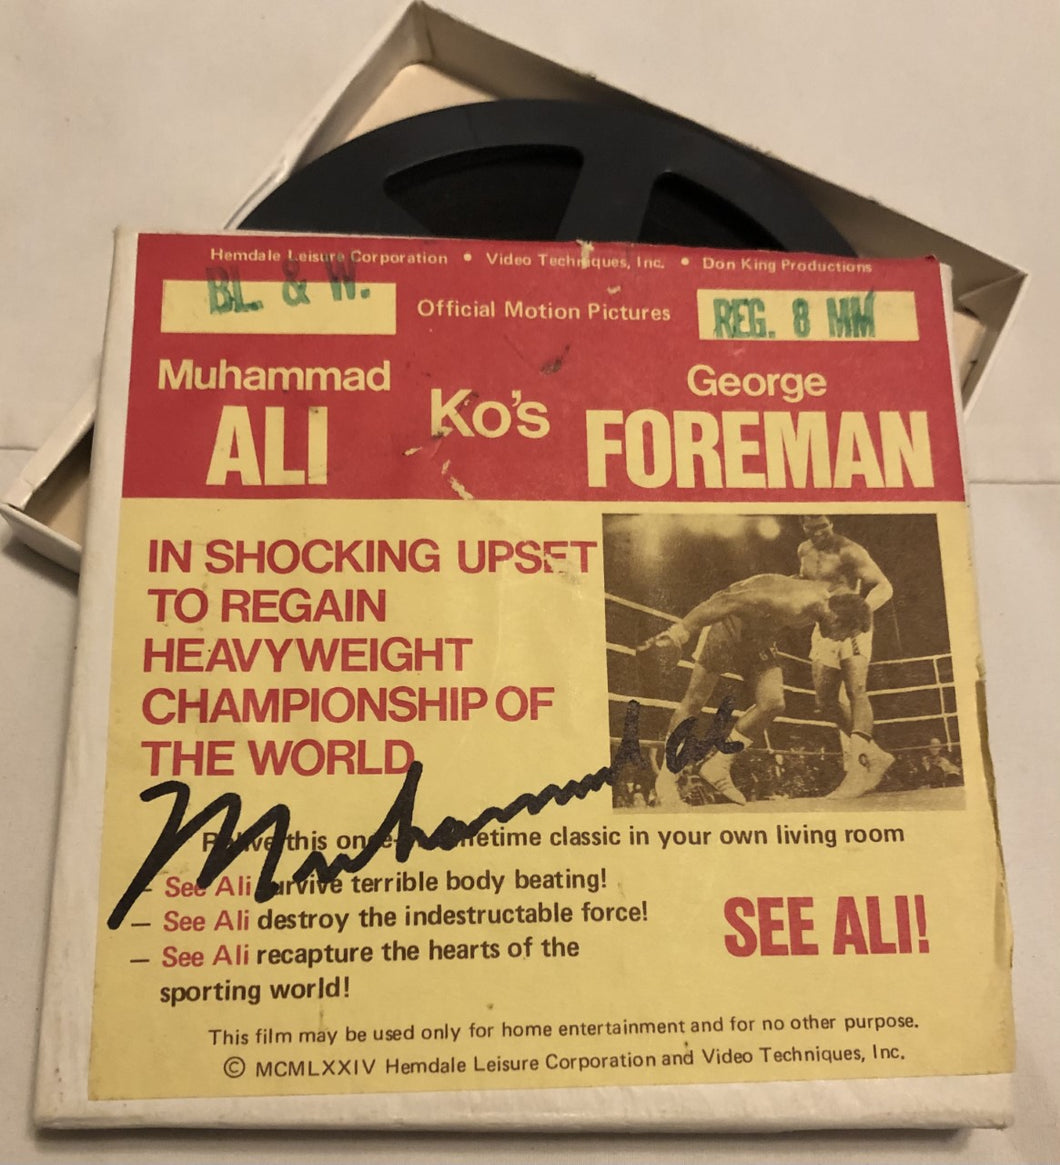 Muhammad Ali Autographed Super Rare 8mm Film Album Cover hand signed